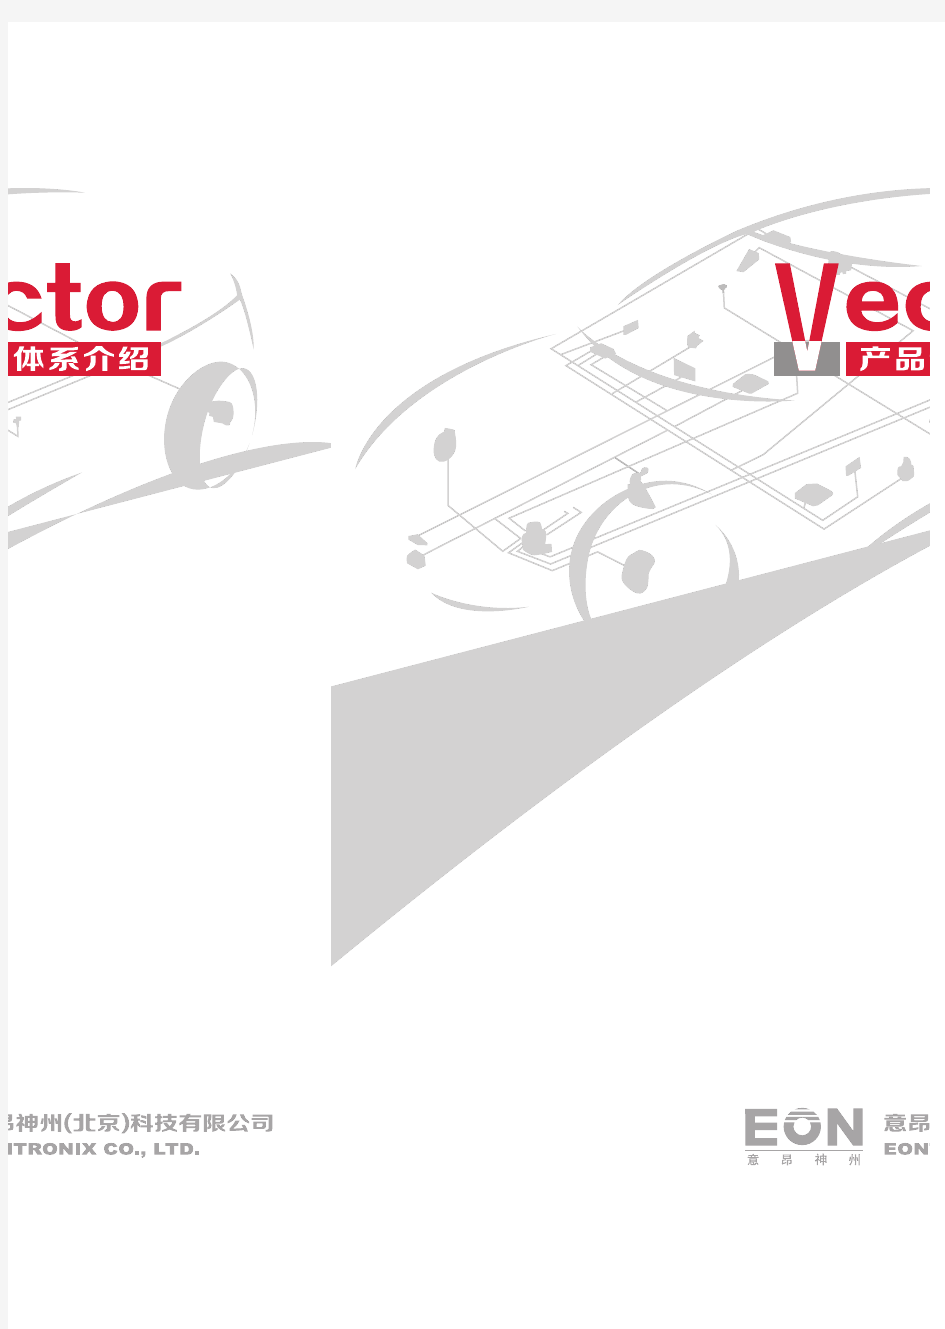 《Vector产品体系介绍》